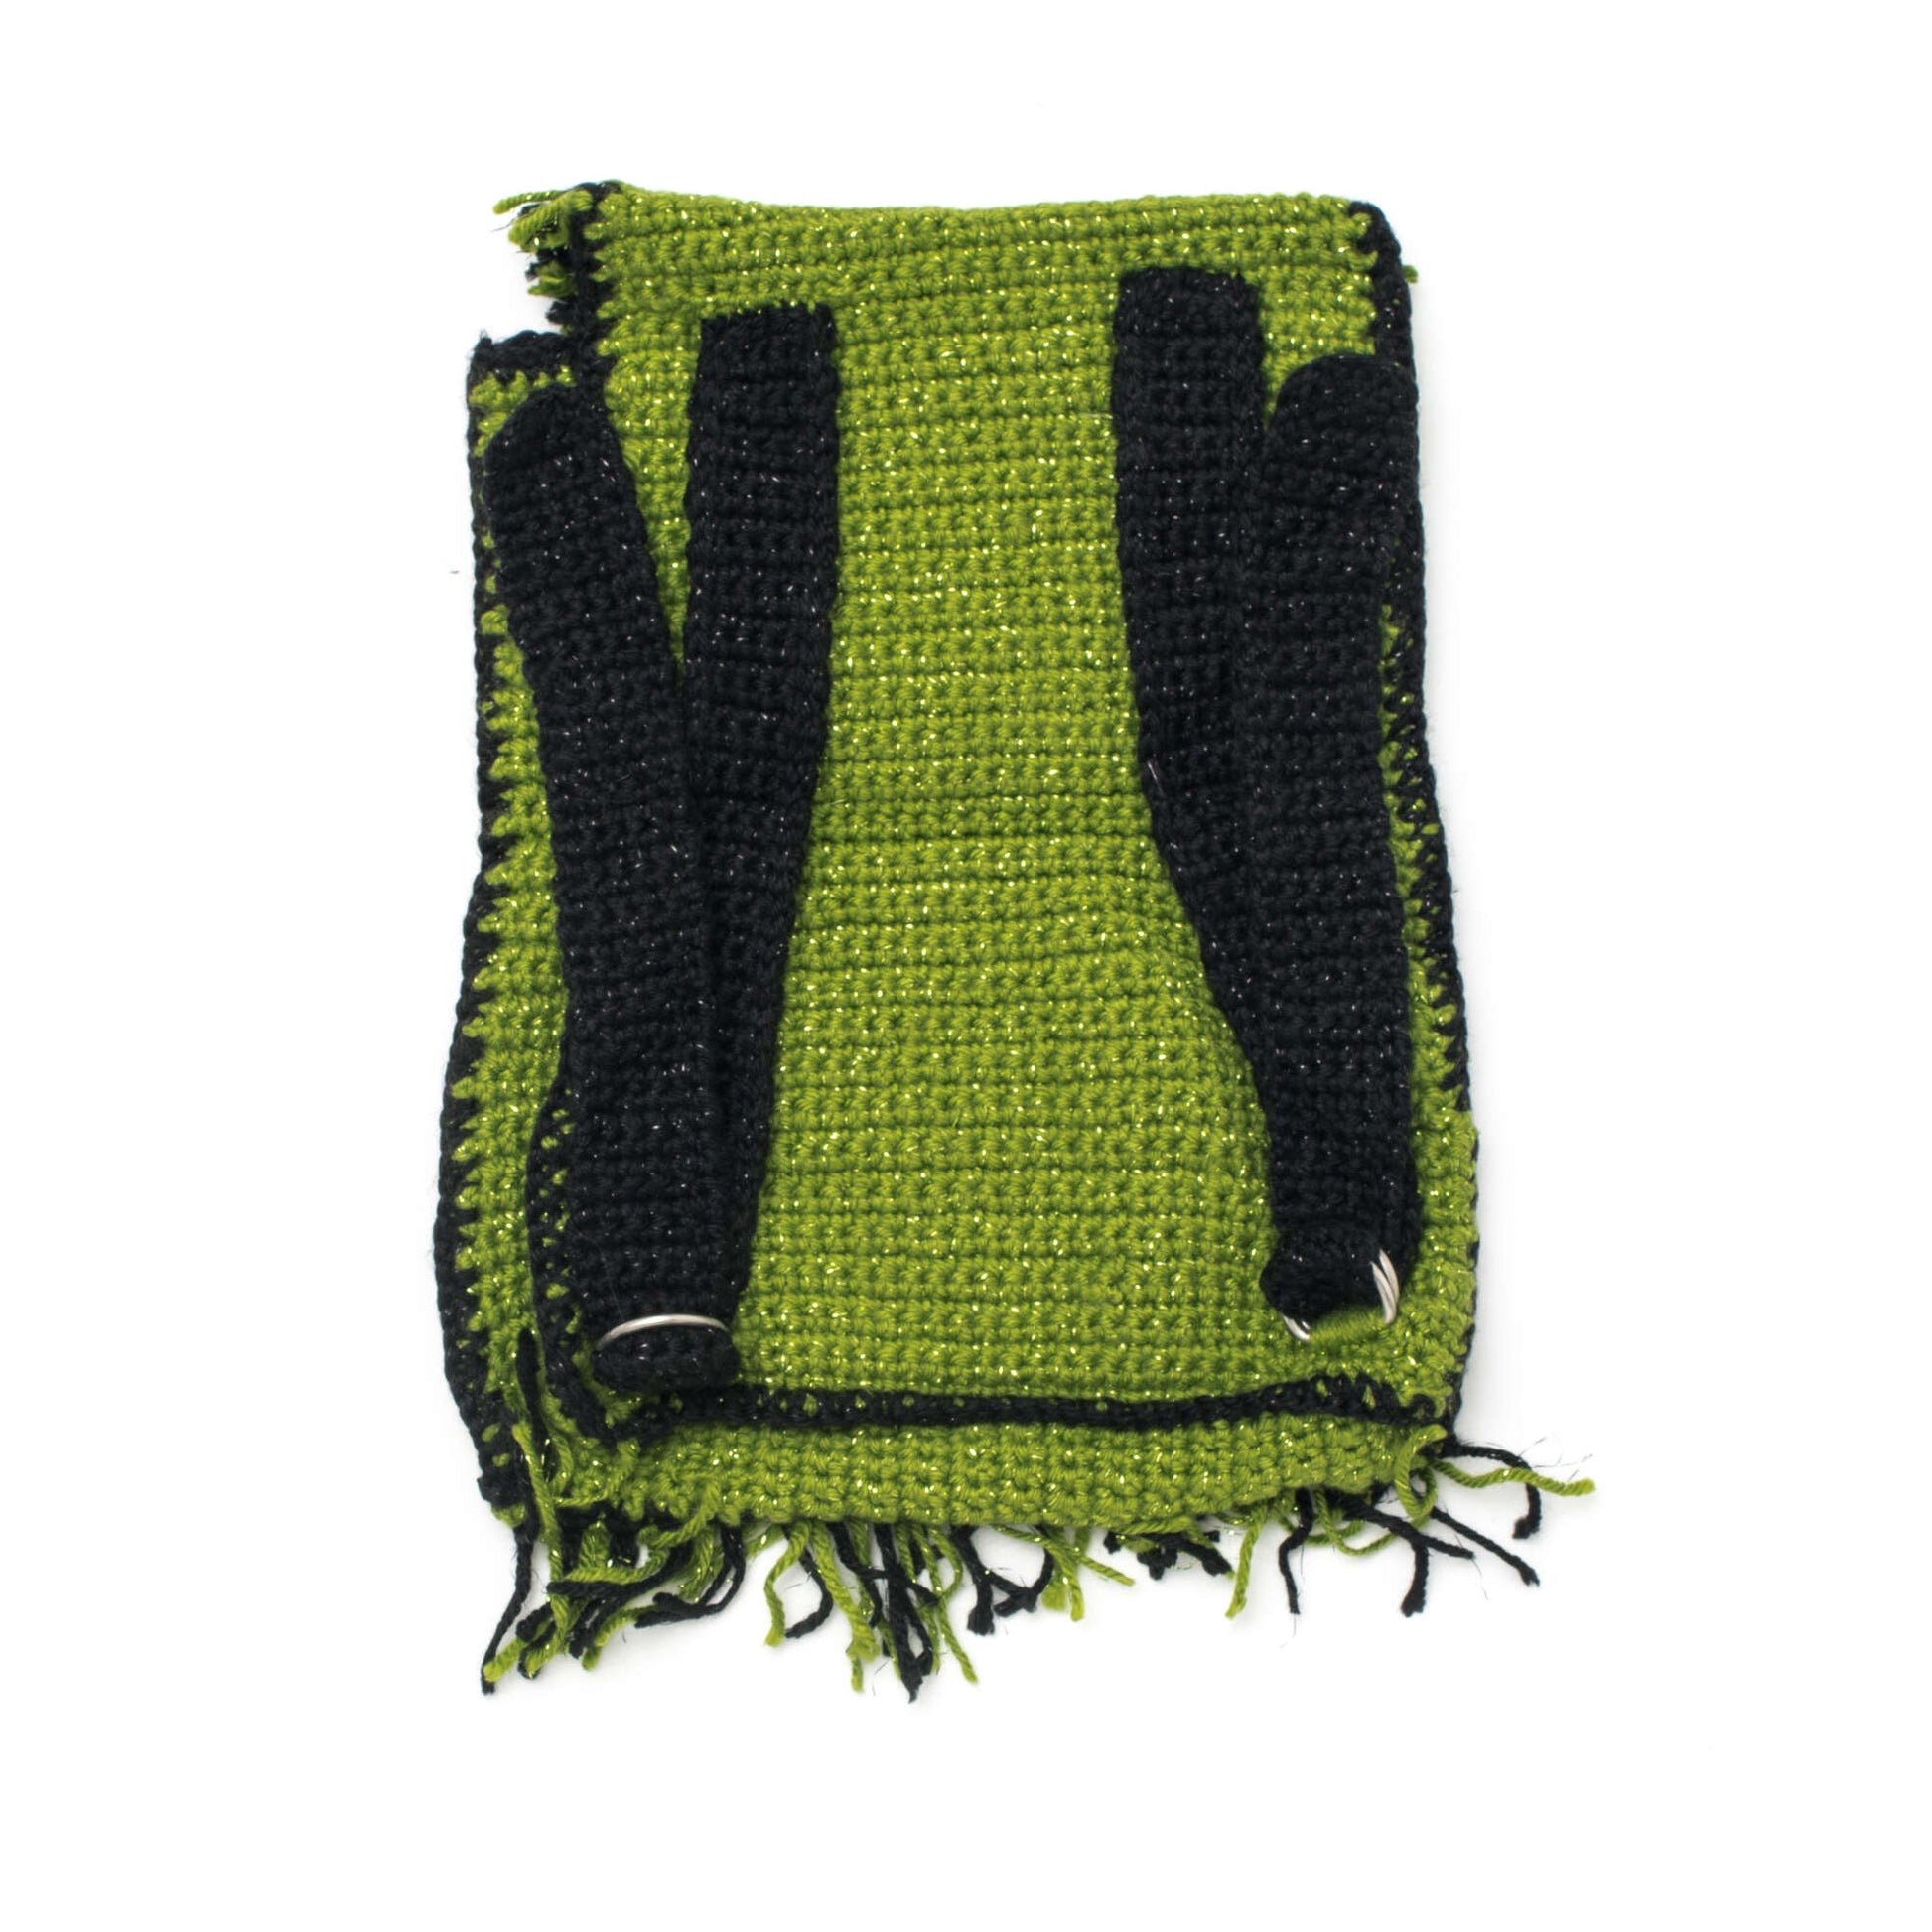 Free Caron Little Girl's Backpack Crochet Pattern